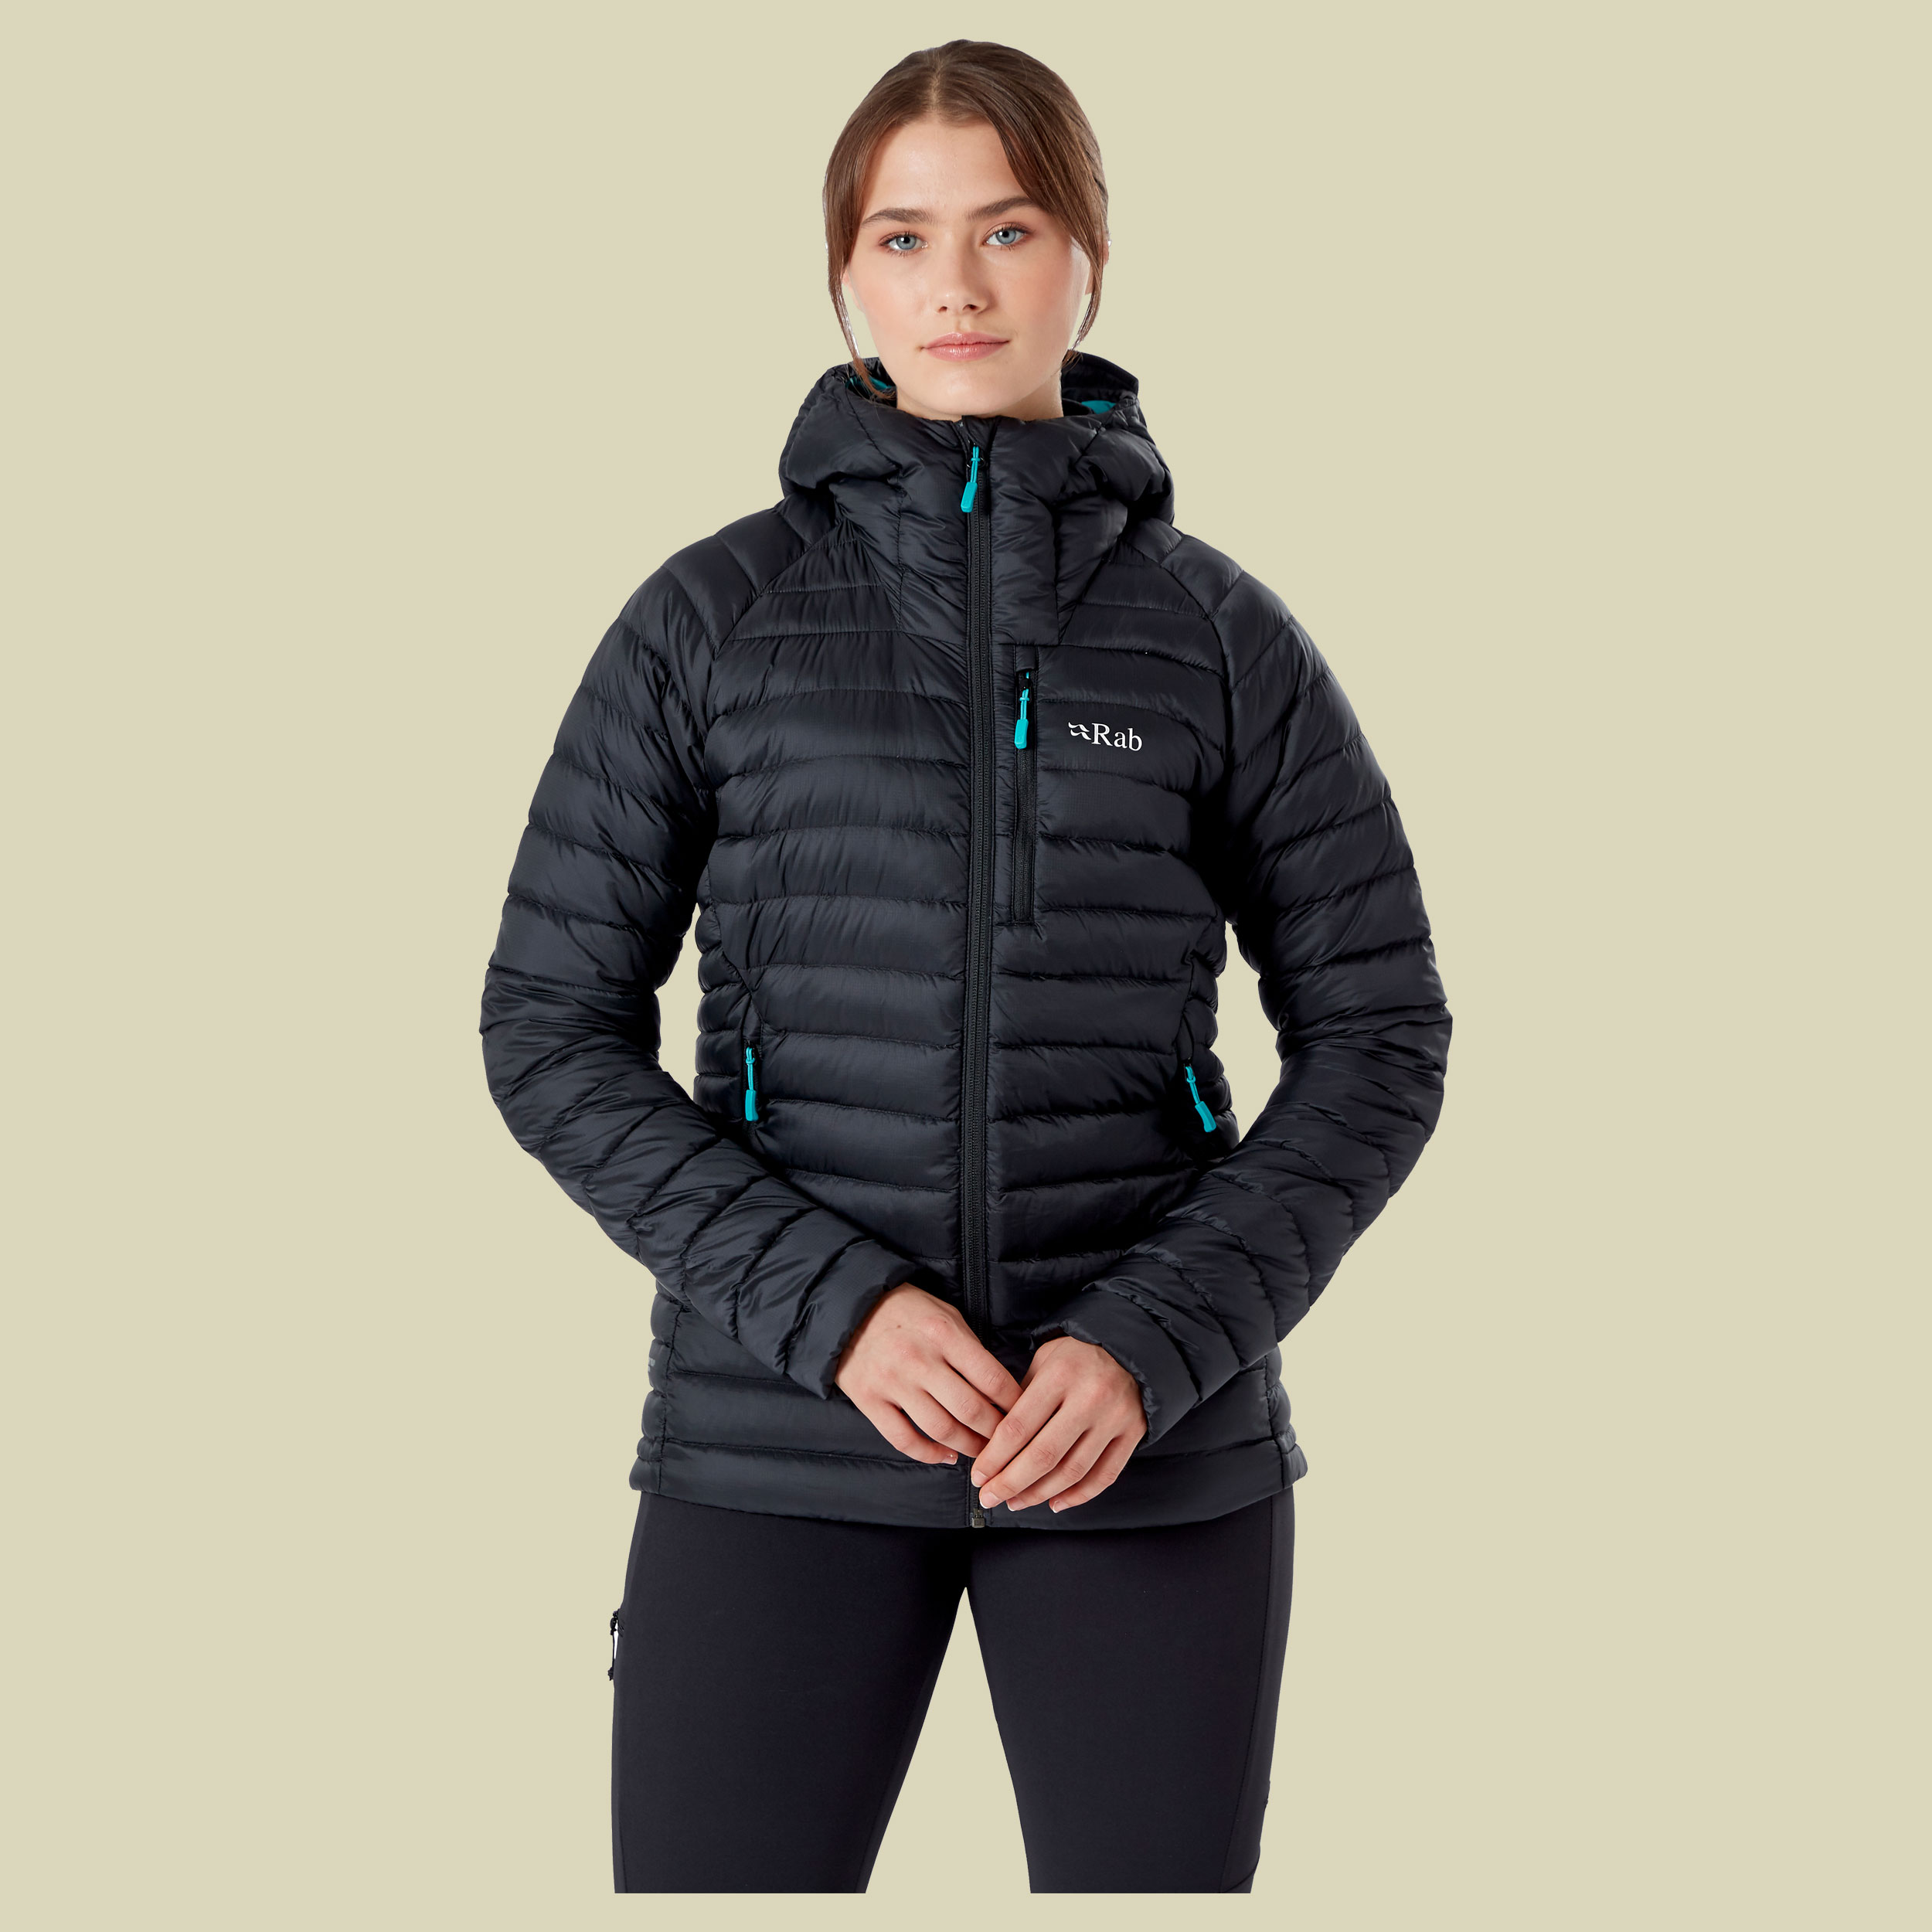 Microlight Alpine Long Jacket Women Größe 44 (16) Farbe black